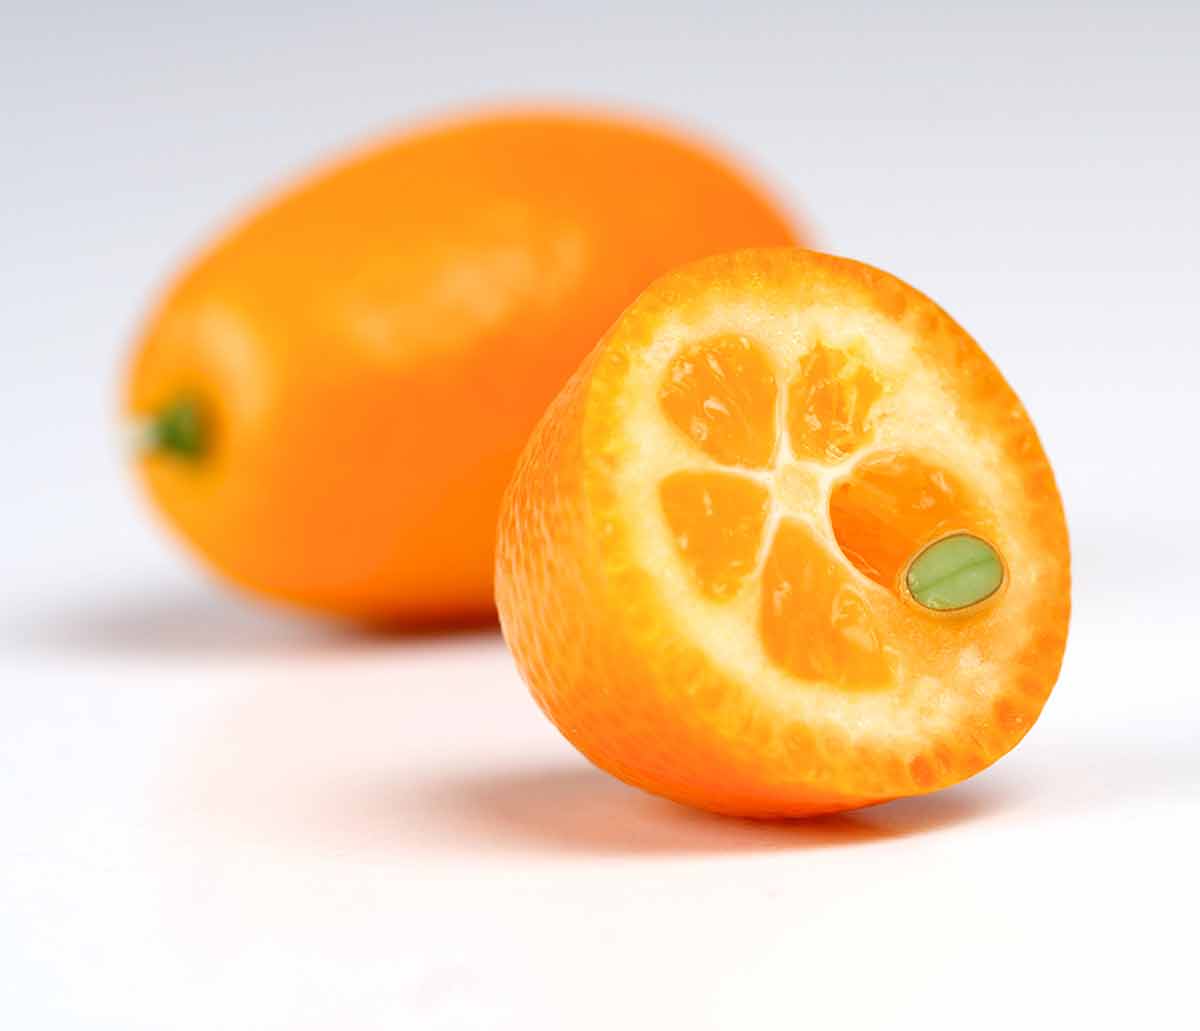 Kumquat on white background